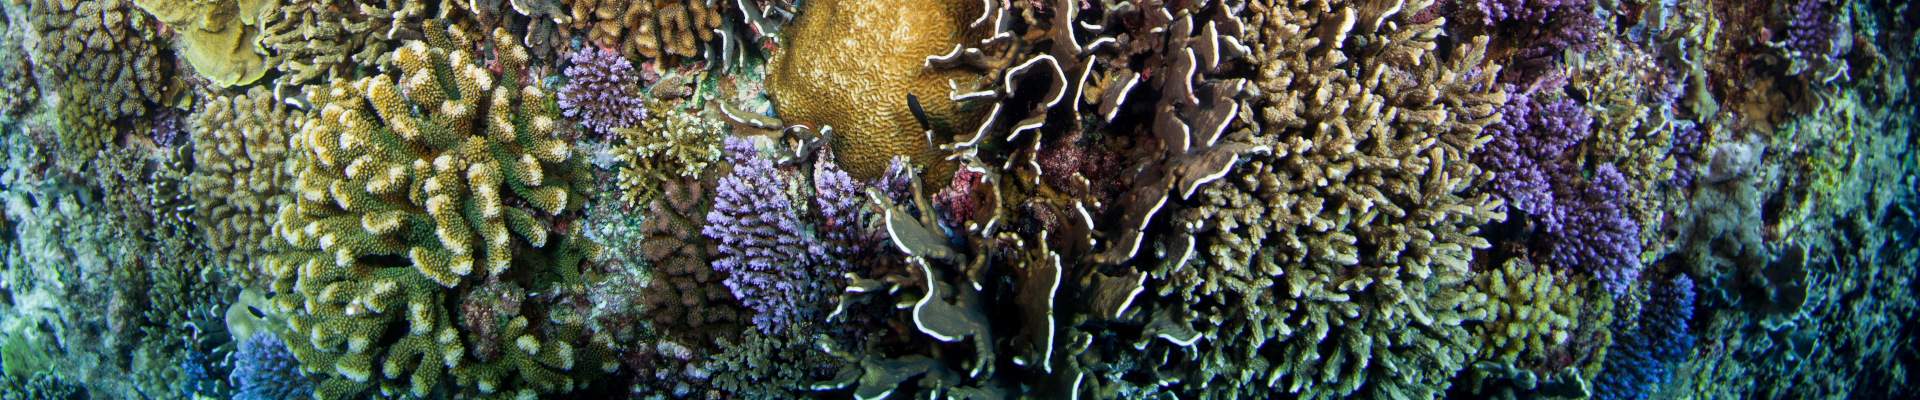 Underwater image of coral reef